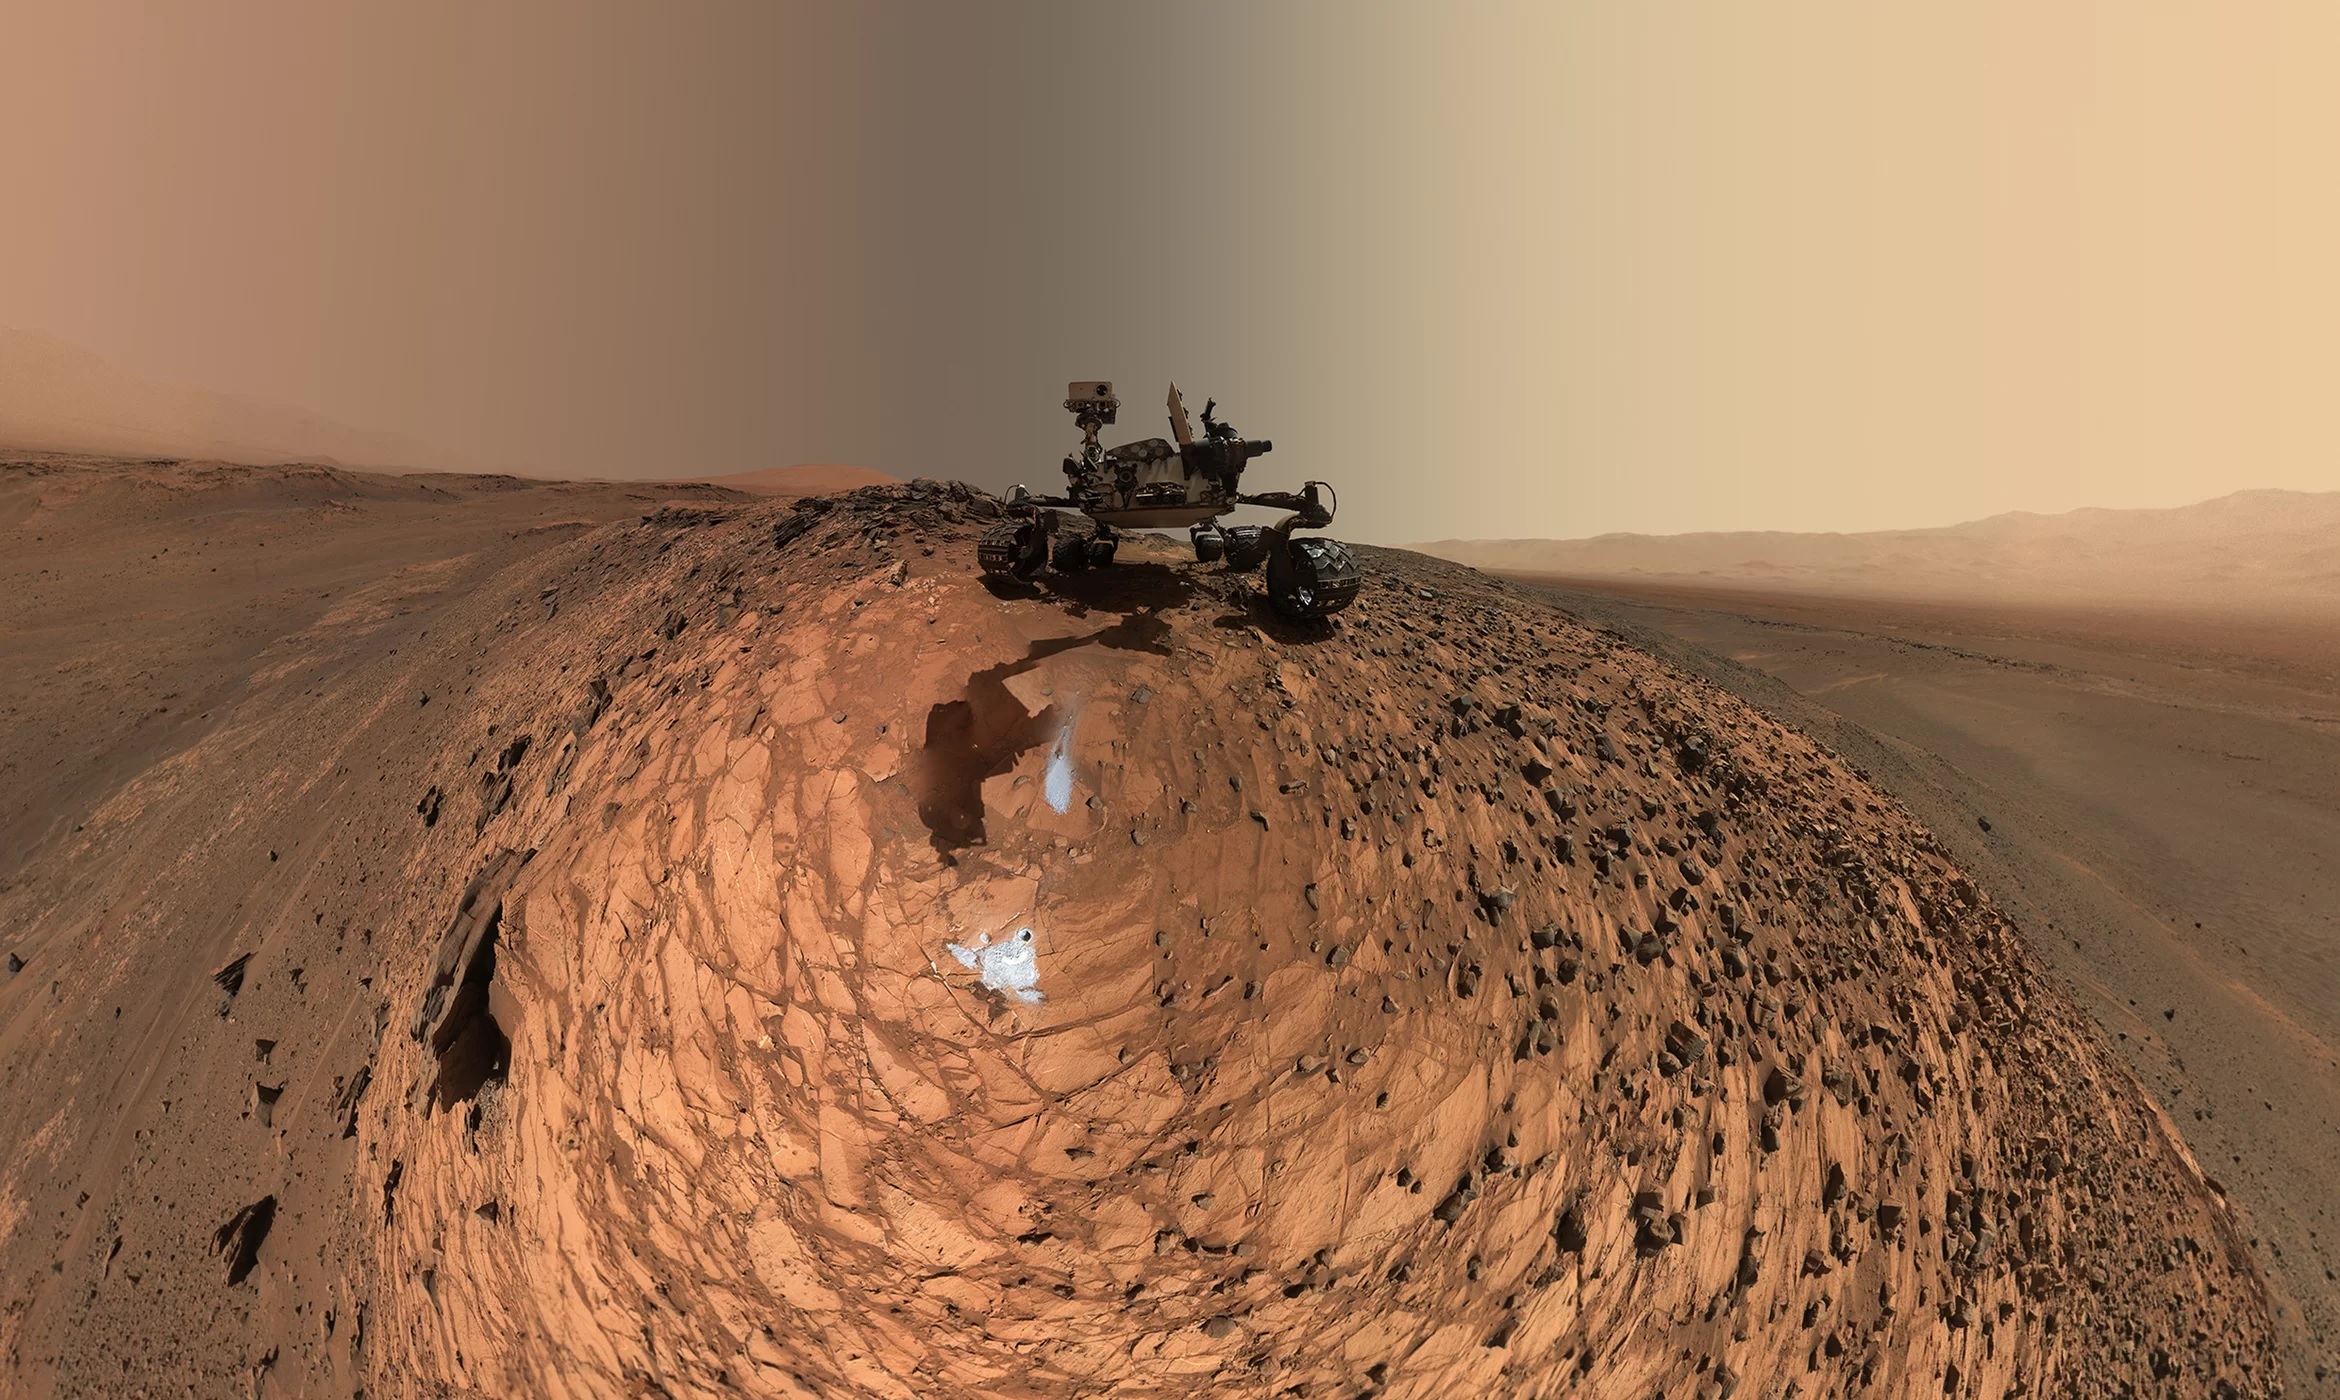 ทำไมการค้นพบของนาซา ‘ไม่ได้พิสูจน์’ ว่า มีสิ่งมีชีวิตบนดาวอังคาร